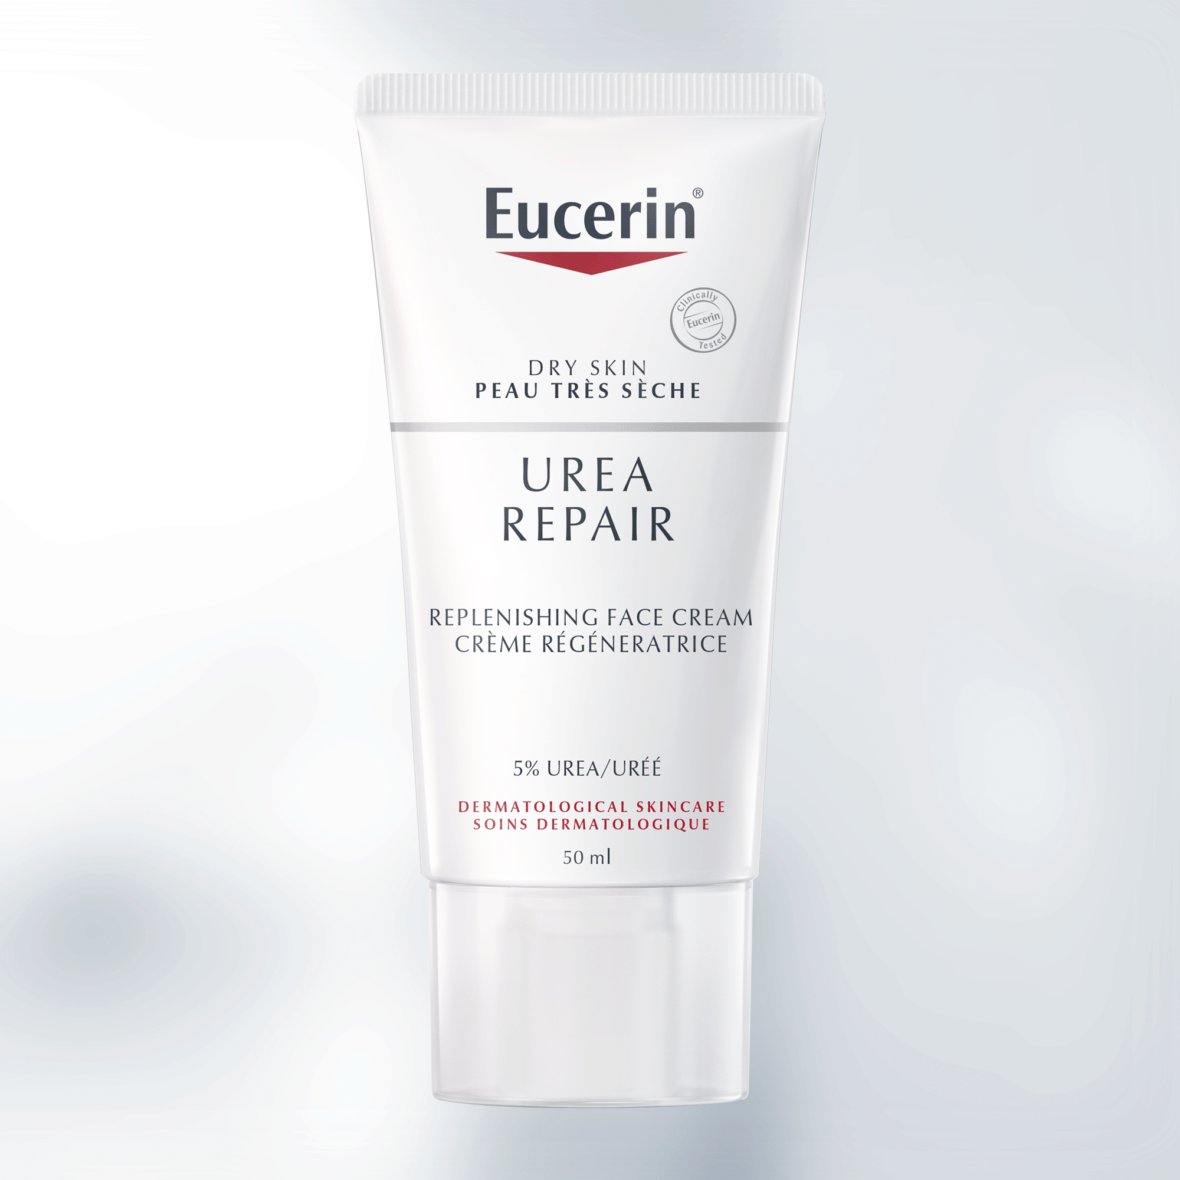 Eucerin 5% Urea Replenishing Face Cream | Dry Skin Relief moisturiser